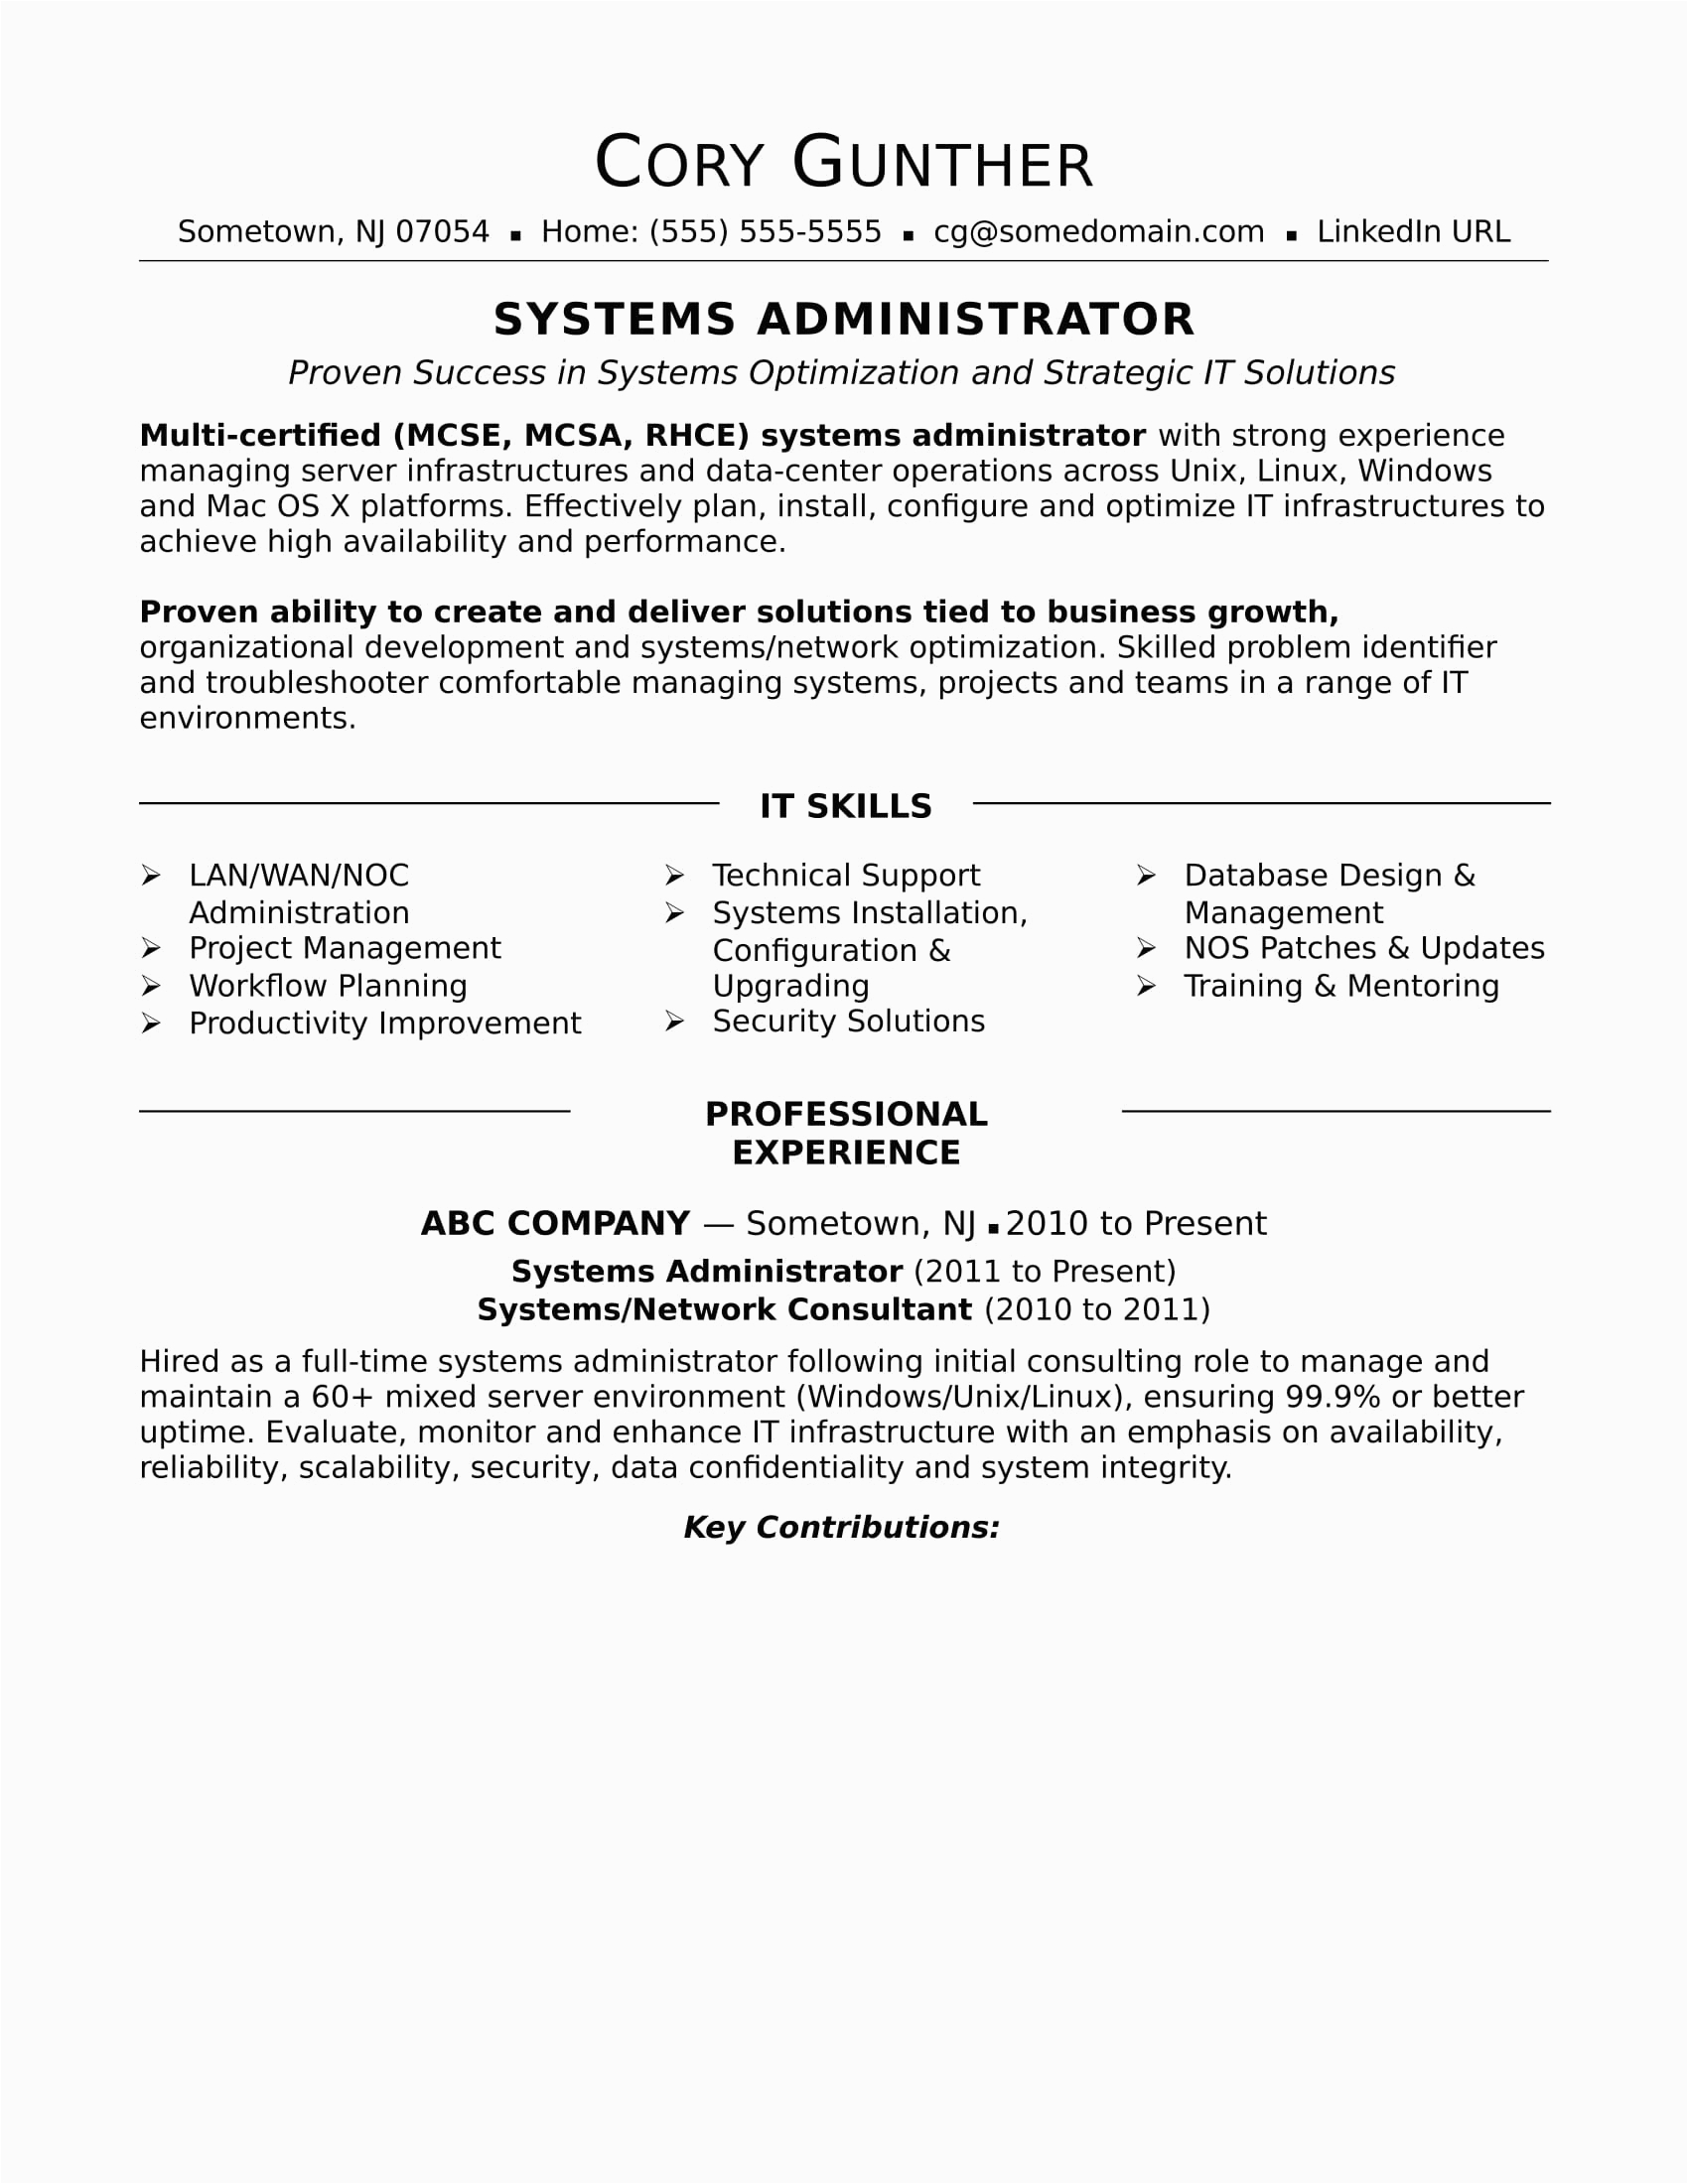 Sample Resume for Network Administrator Fresher Network Administrator Resume